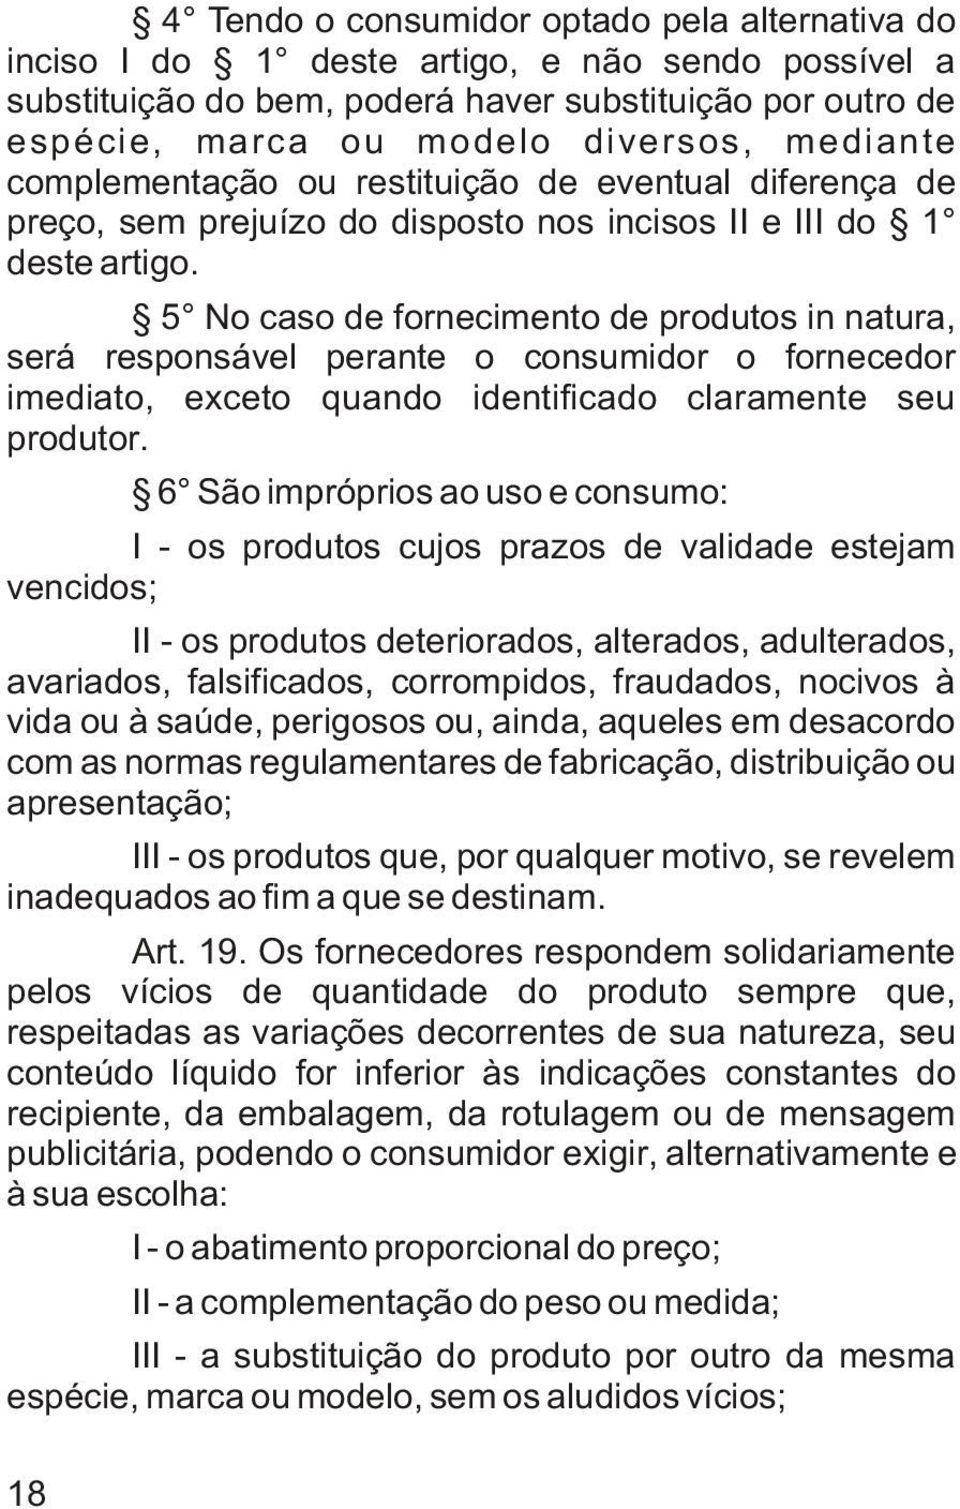 5 No caso de fornecimento de produtos in natura, será responsável perante o consumidor o fornecedor imediato, exceto quando identificado claramente seu produtor.